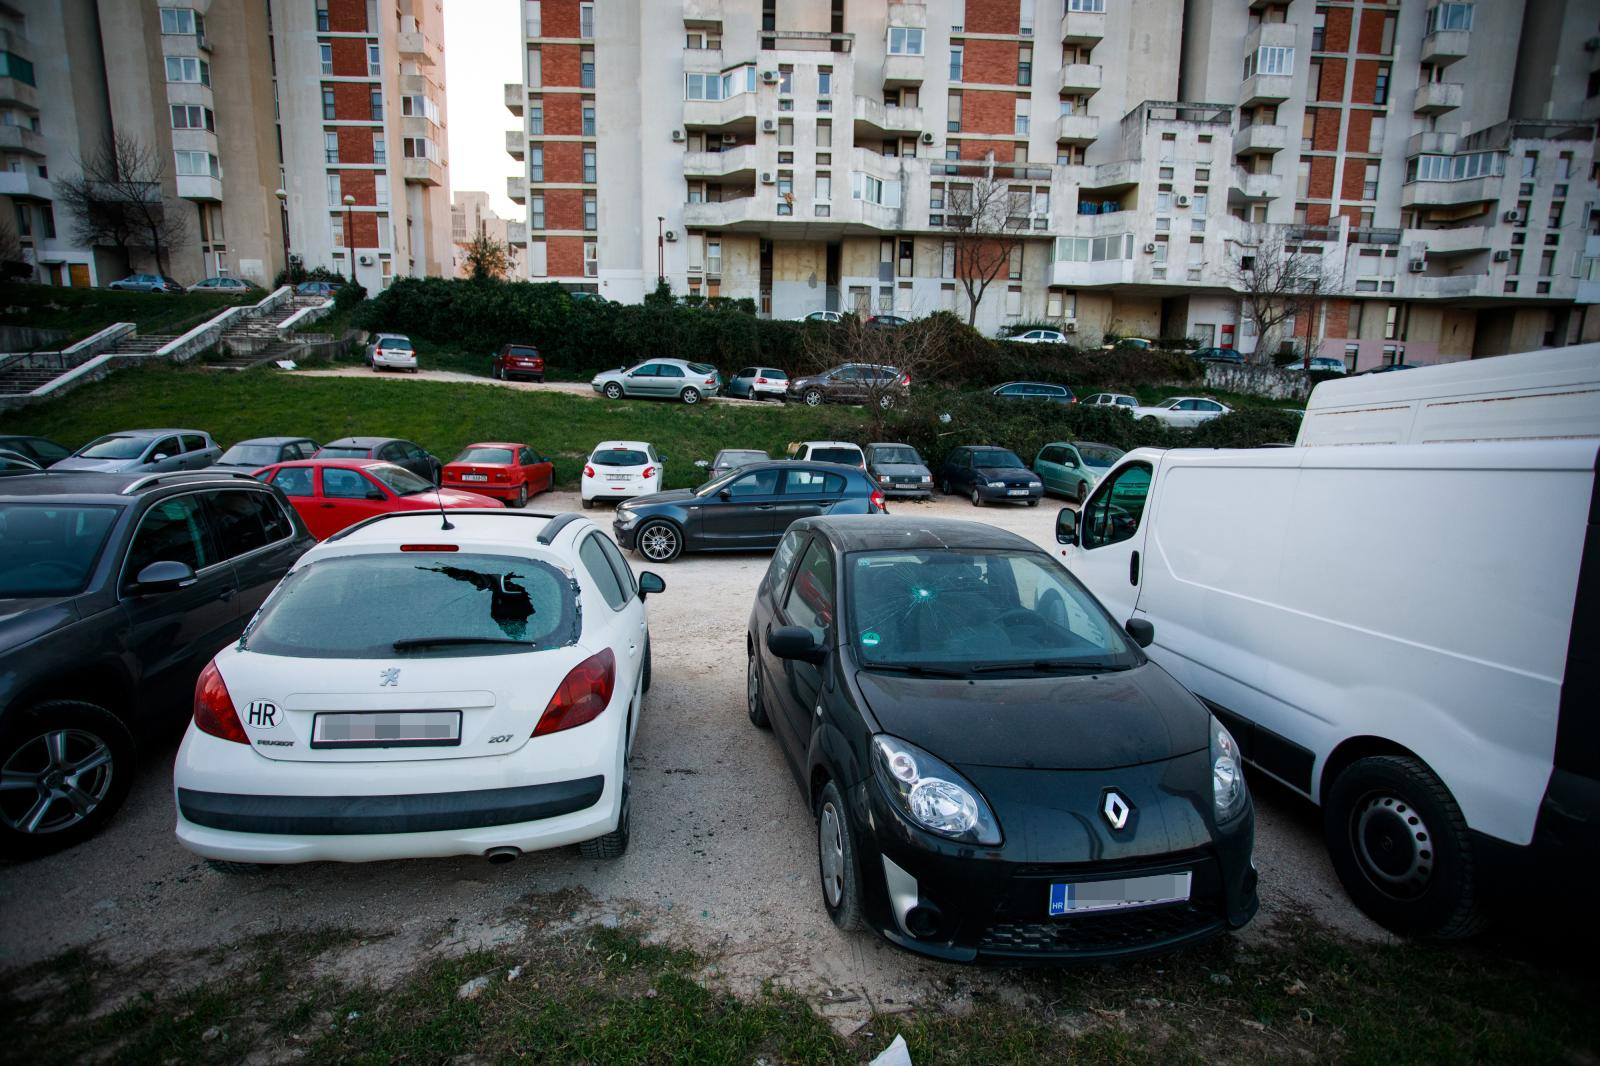 Rano jutros, dodaju iz policije, zabilježili su oštećenja stakala na ukupno 21 vozilu na području Trstenika u Splitu.